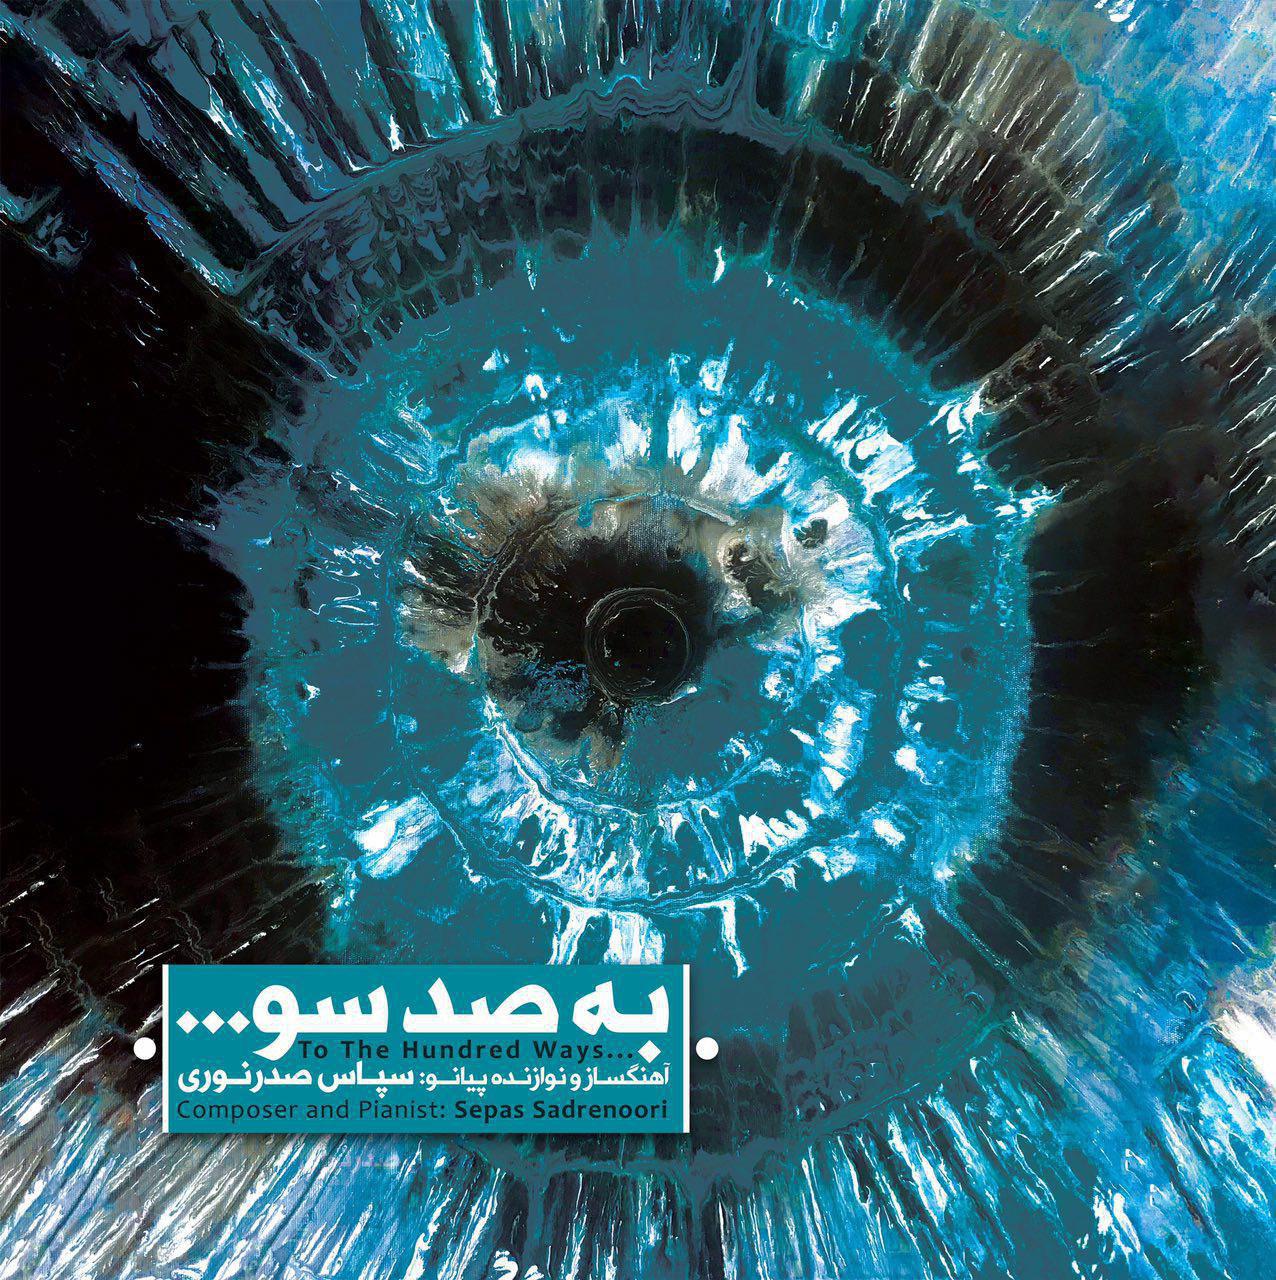 آلبوم «به صد سو ...» منتشر شد/ موسیقی ایرانی و تلفیق با چند سبک گوناگون